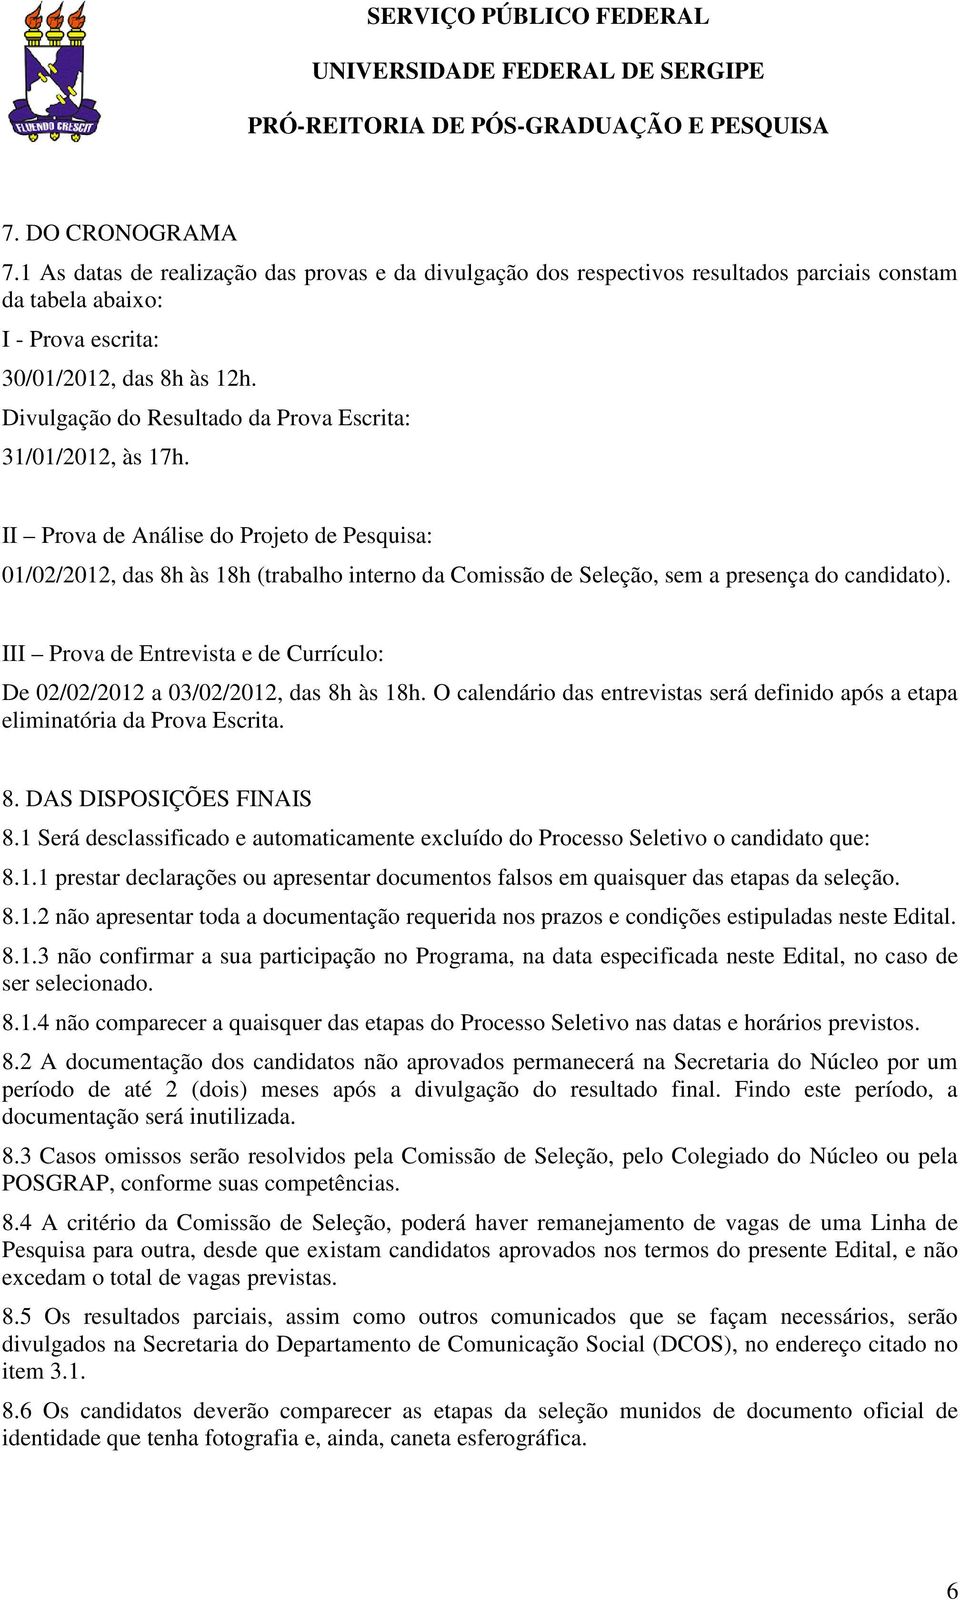 II Prova de Análise do Projeto de Pesquisa: 01/02/2012, das 8h às 18h (trabalho interno da Comissão de Seleção, sem a presença do candidato).